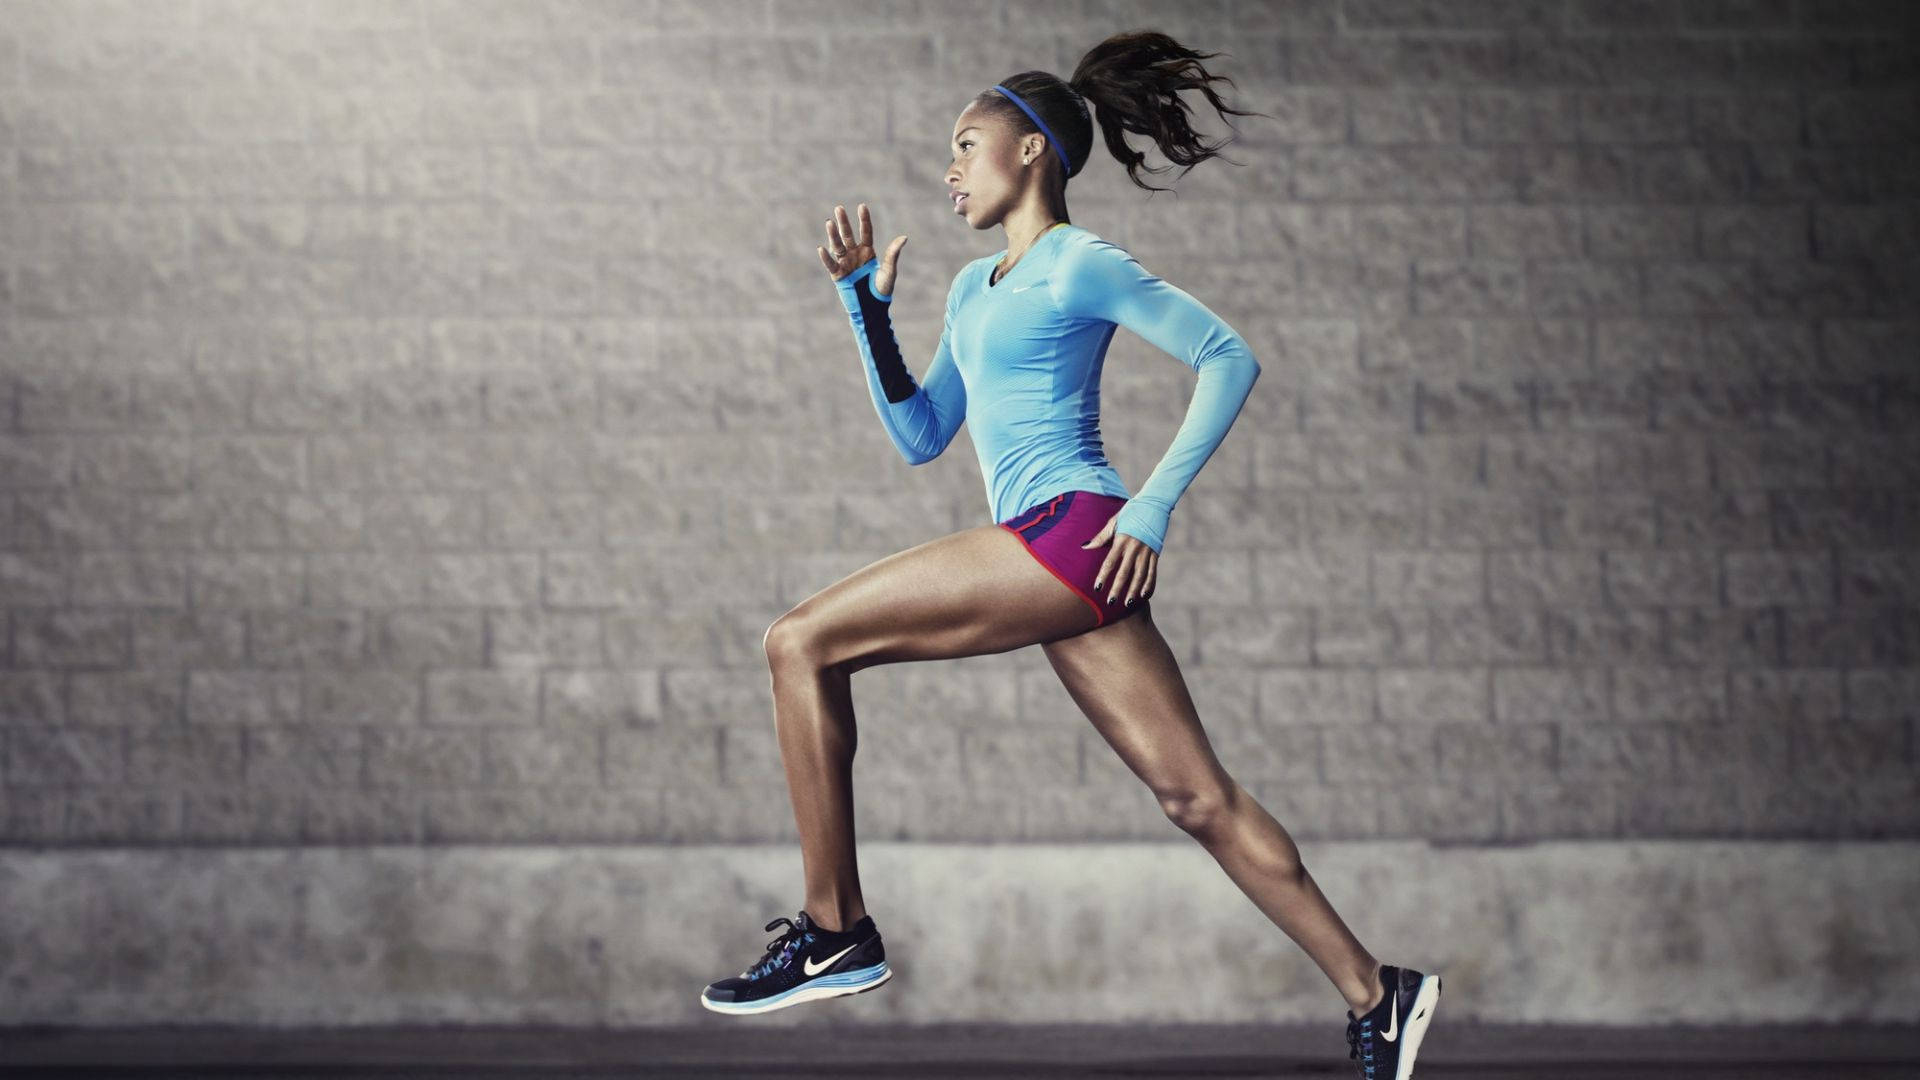 1920x1080 Download Nike Girl Athlete Running Wallpaper